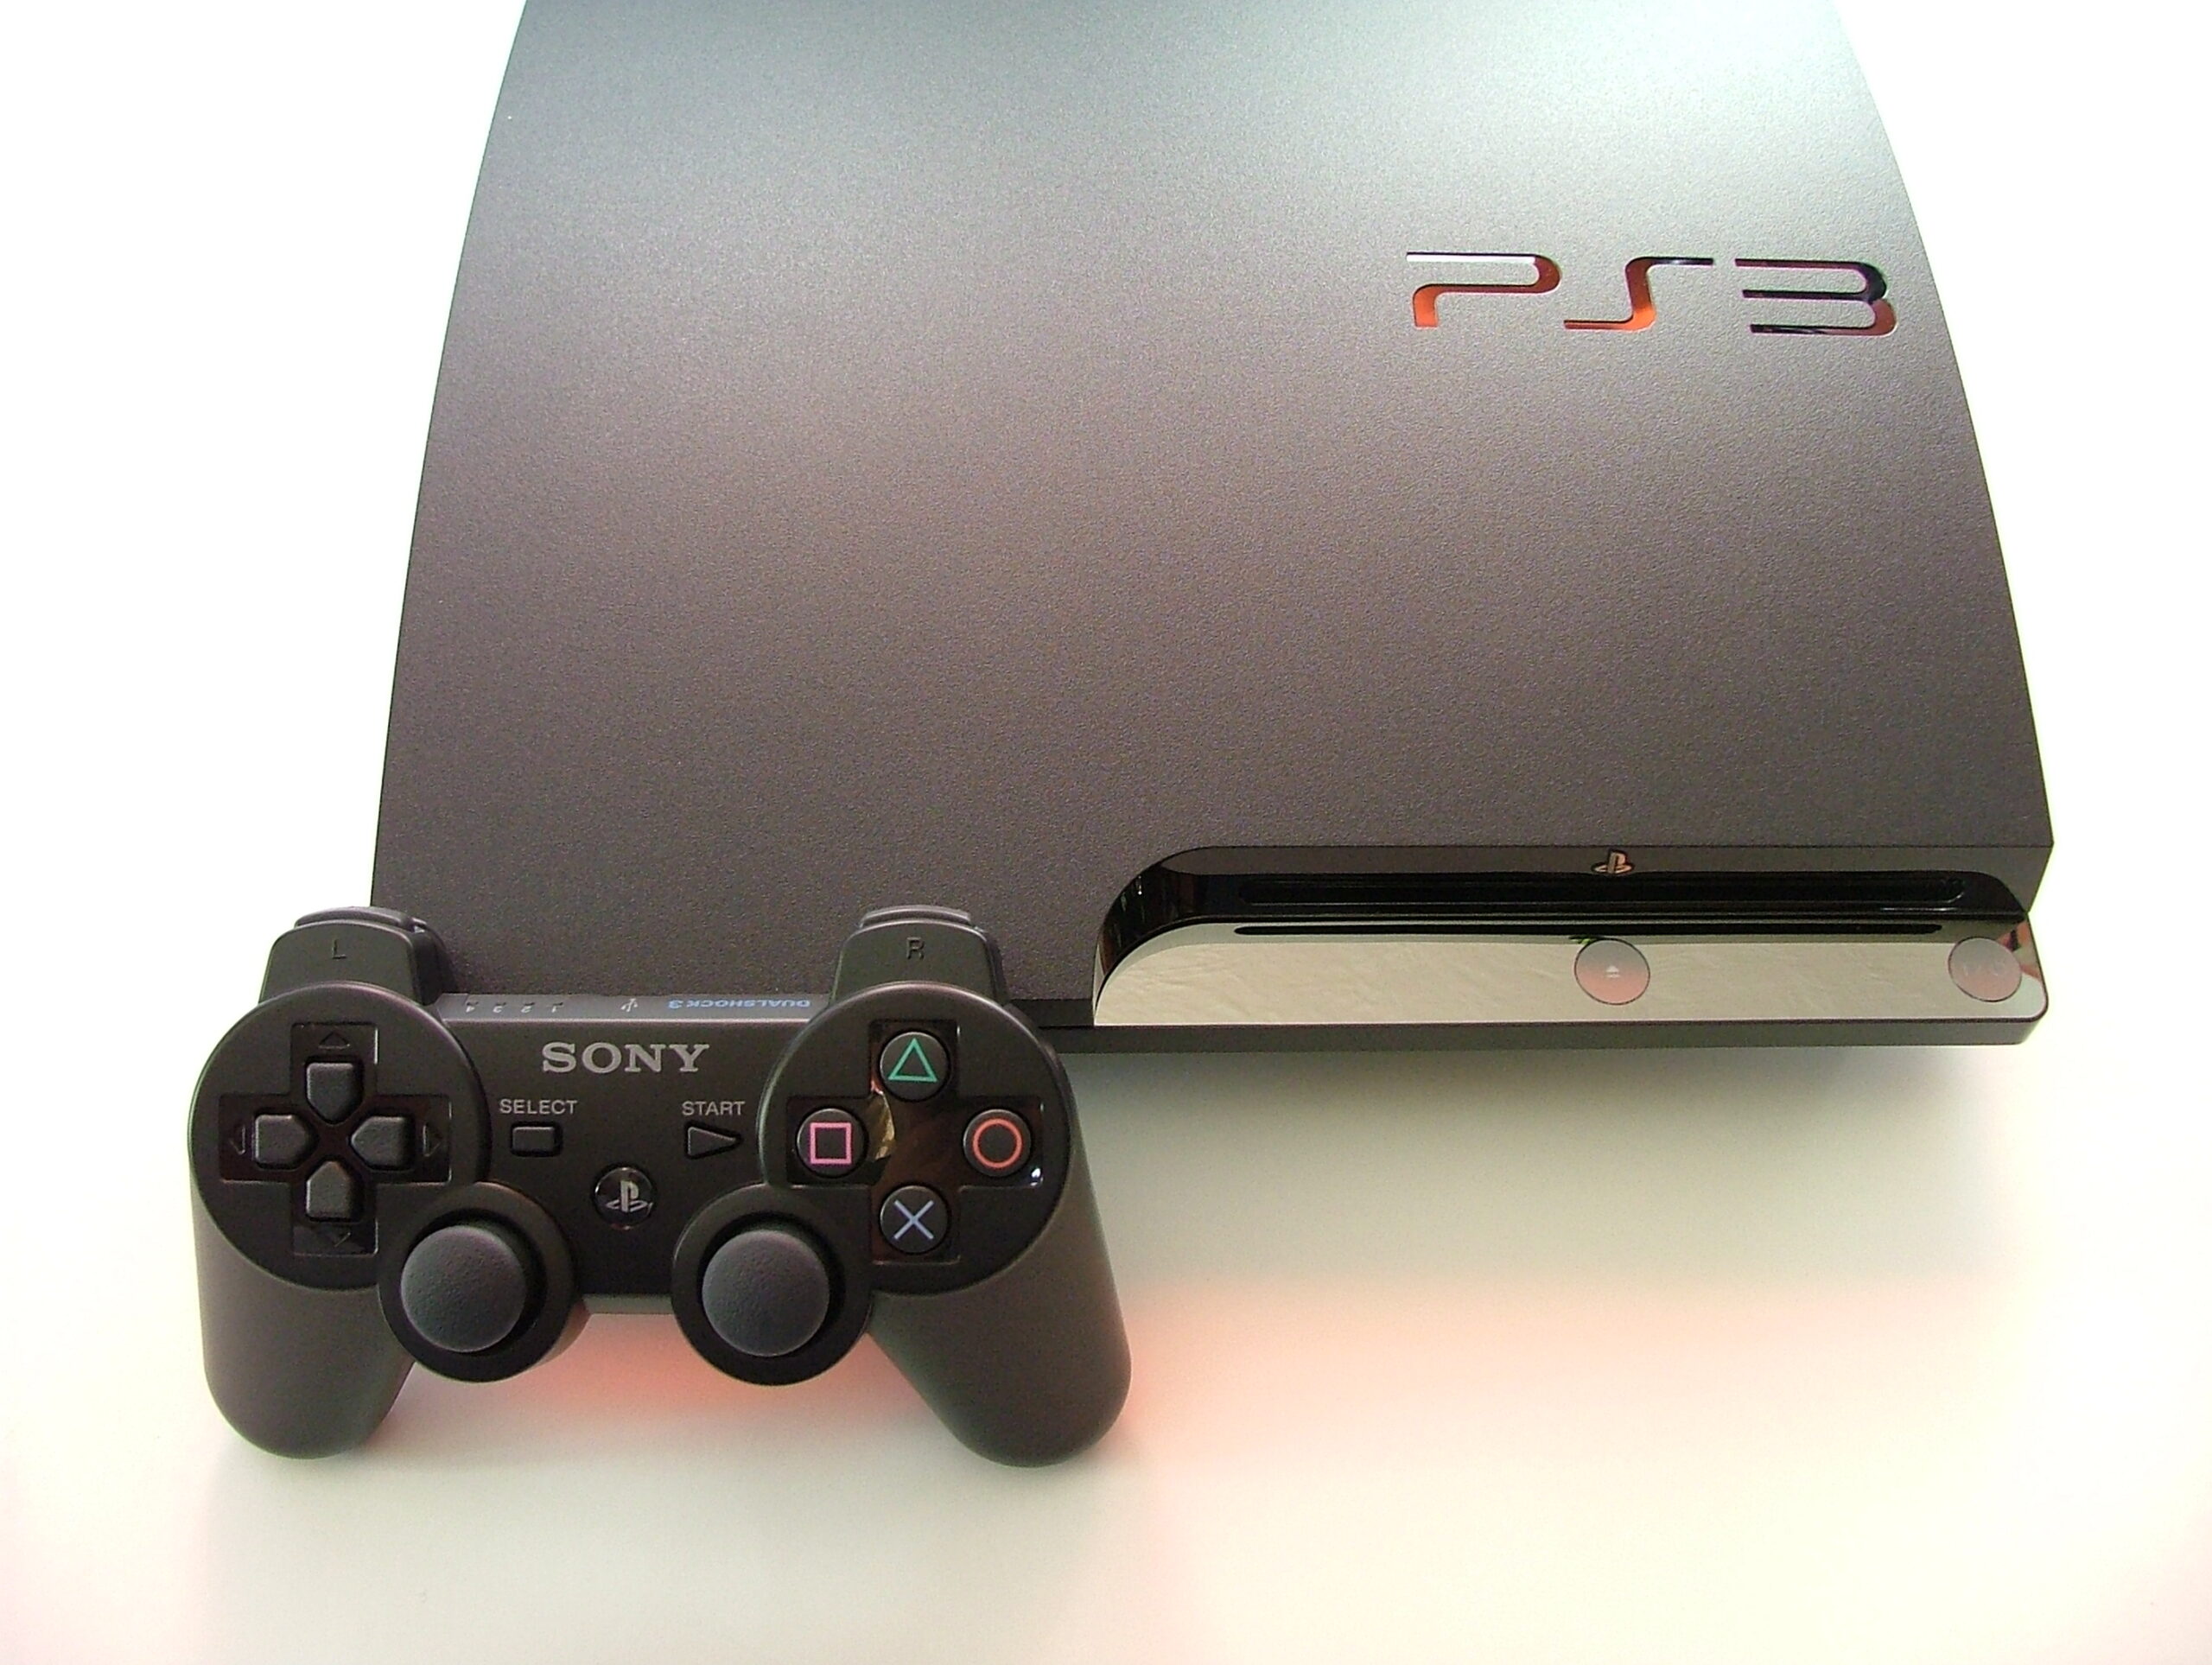 La PlayStatim 3 Slim, une des variantes de la PS3